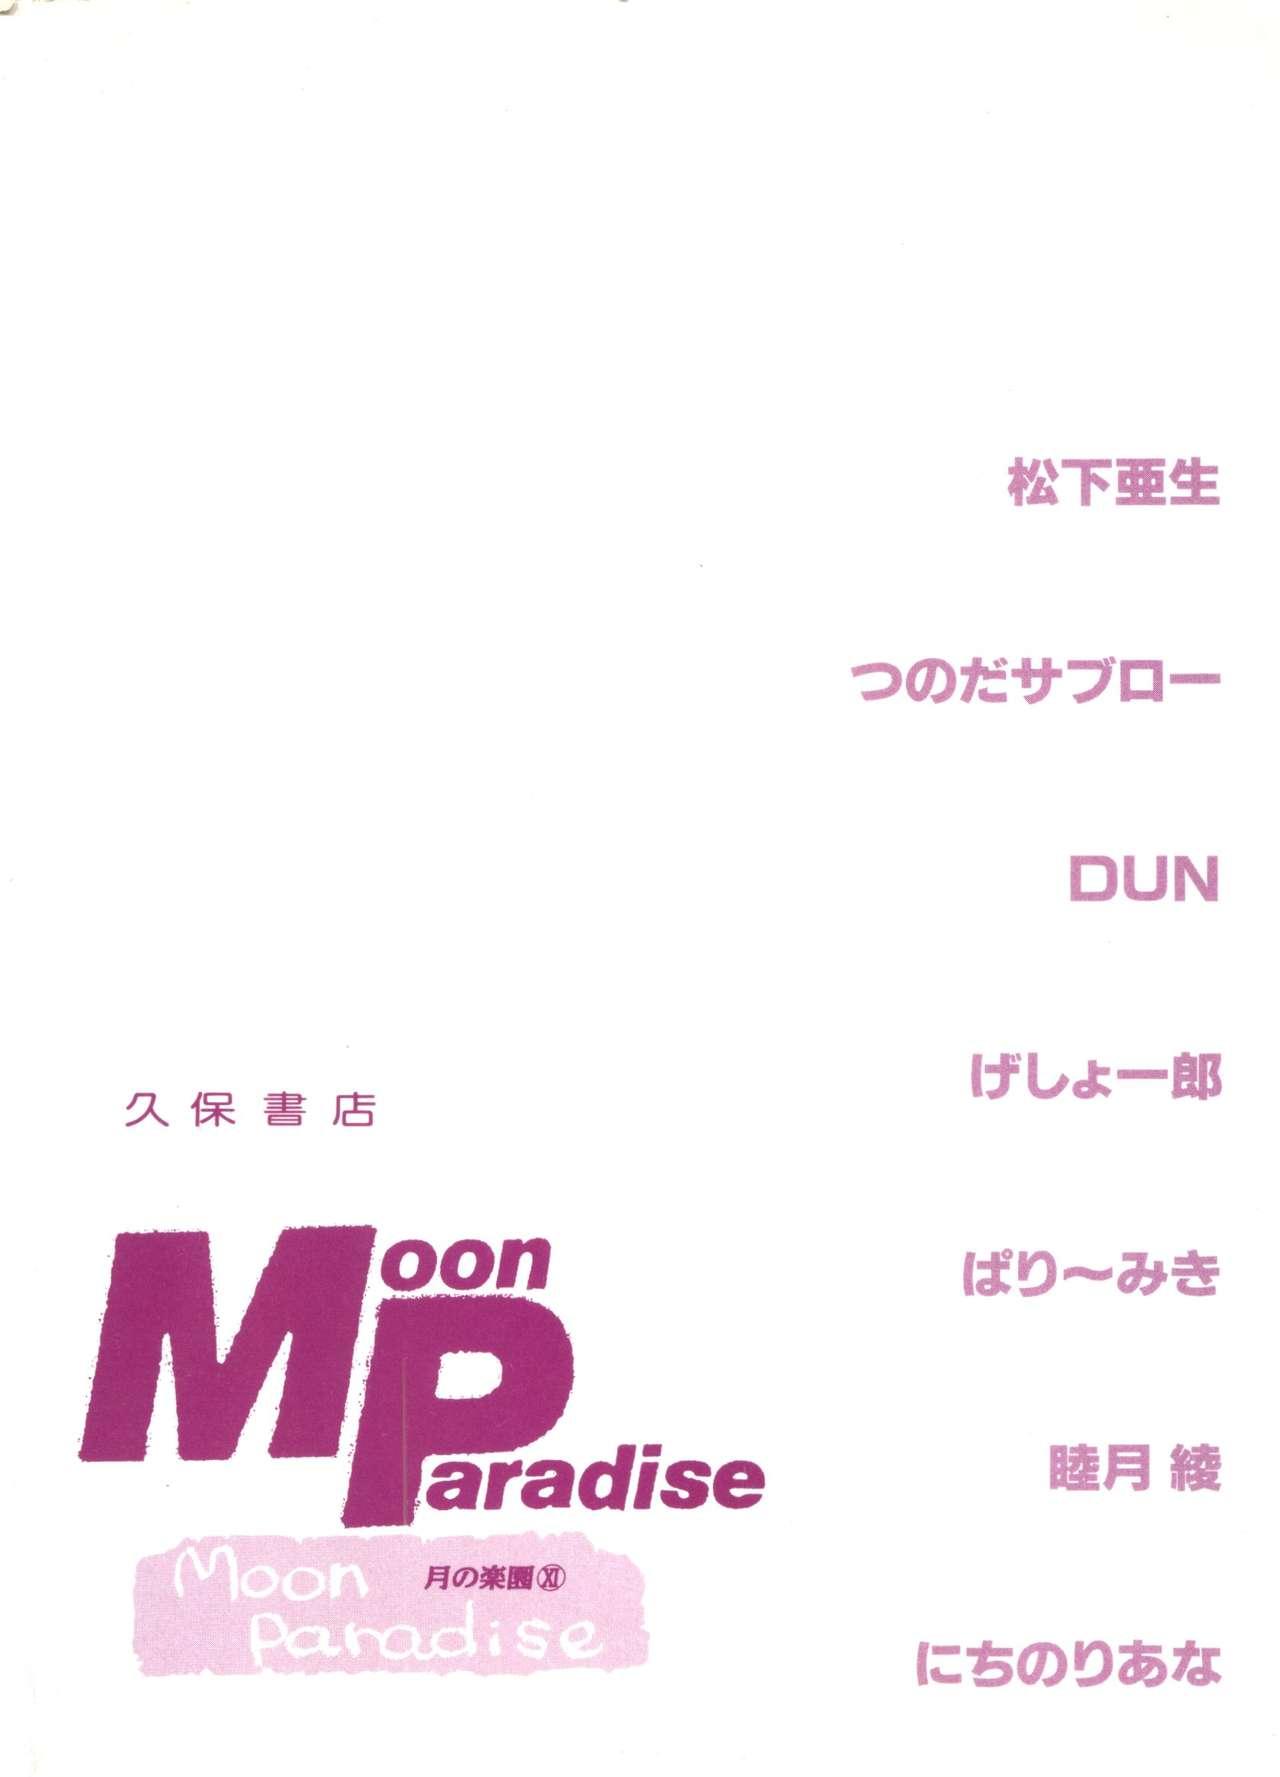 Bishoujo Doujinshi Anthology 18 - Moon Paradise 11 Tsuki no Rakuen 146